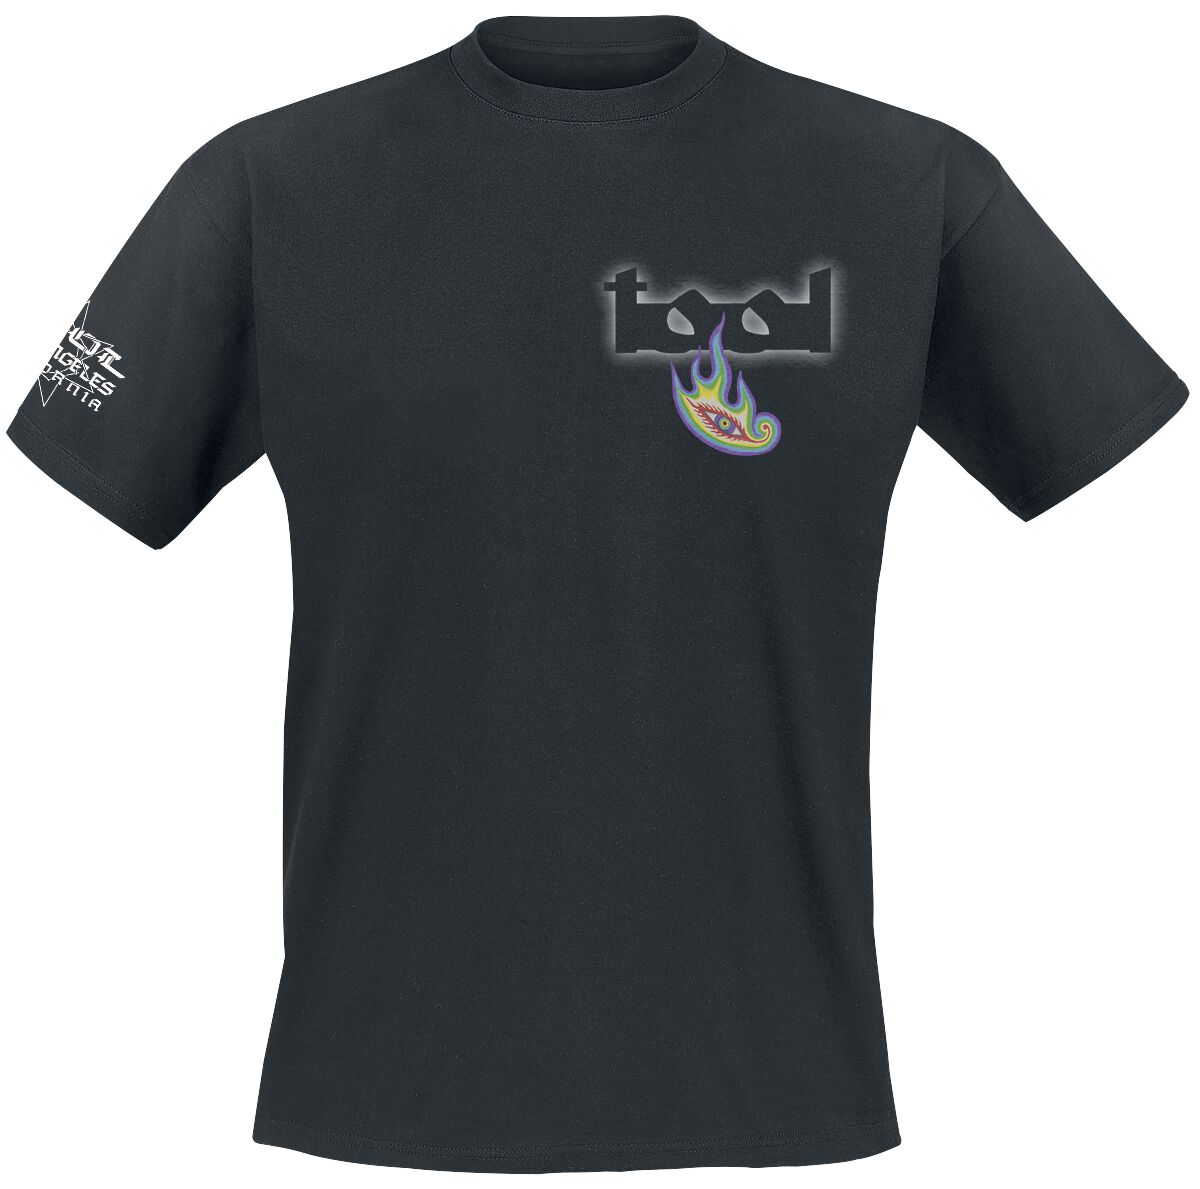 Tool T-Shirt - Lateralus - S bis XXL - für Männer - Größe XL - schwarz  - Lizenziertes Merchandise!